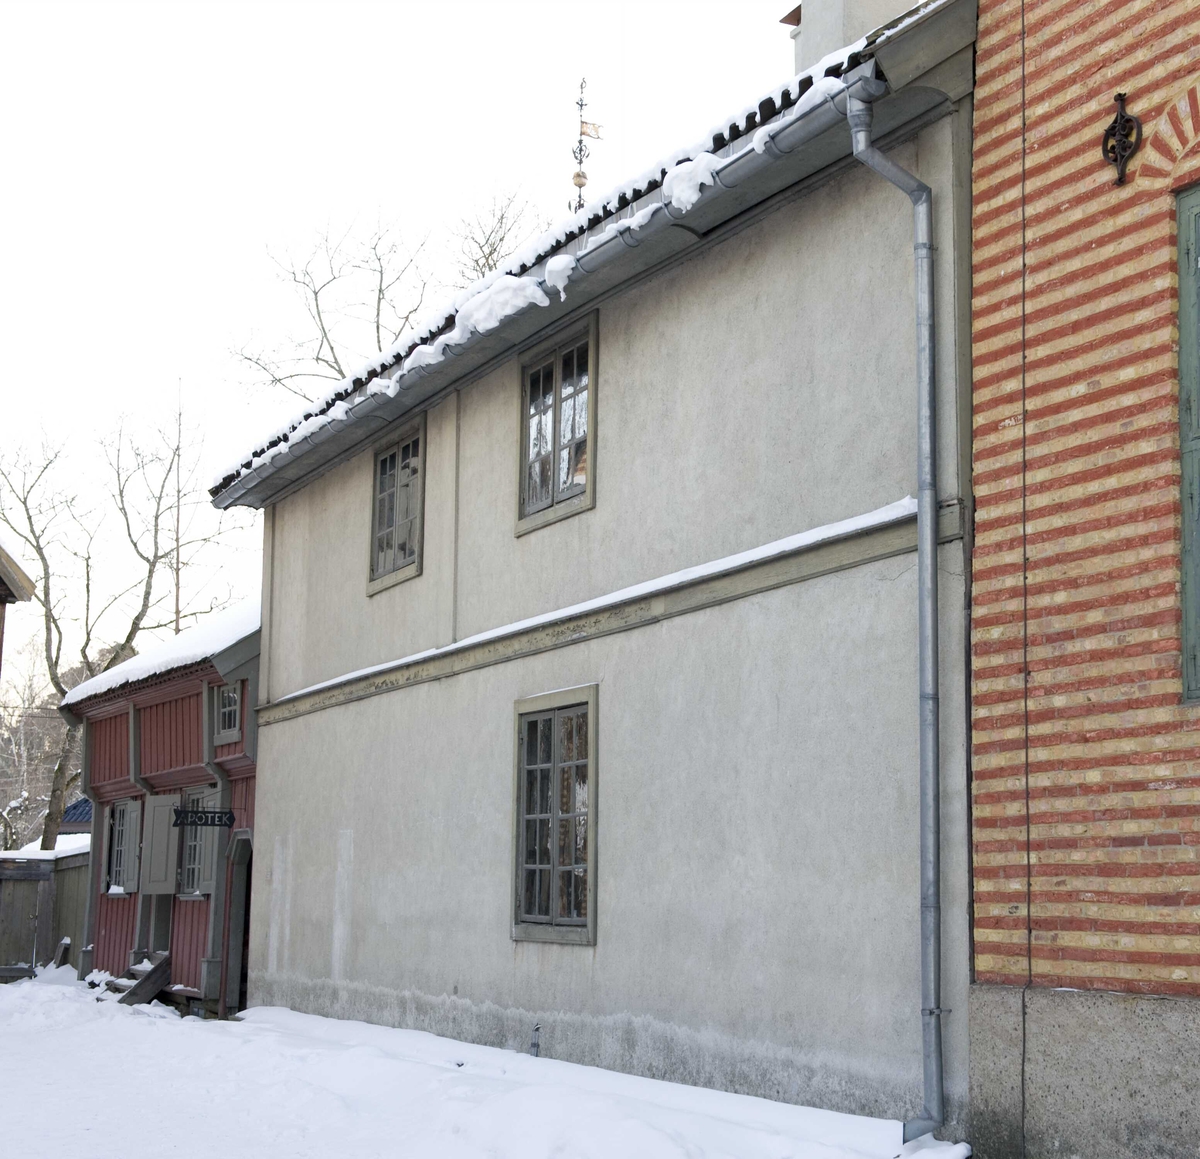 Uthus til Rådhusgata 7, Oslo. Hans Nielsen Hauge satt fengslet i et rom på loftet fra 1804-1811.
NF212.